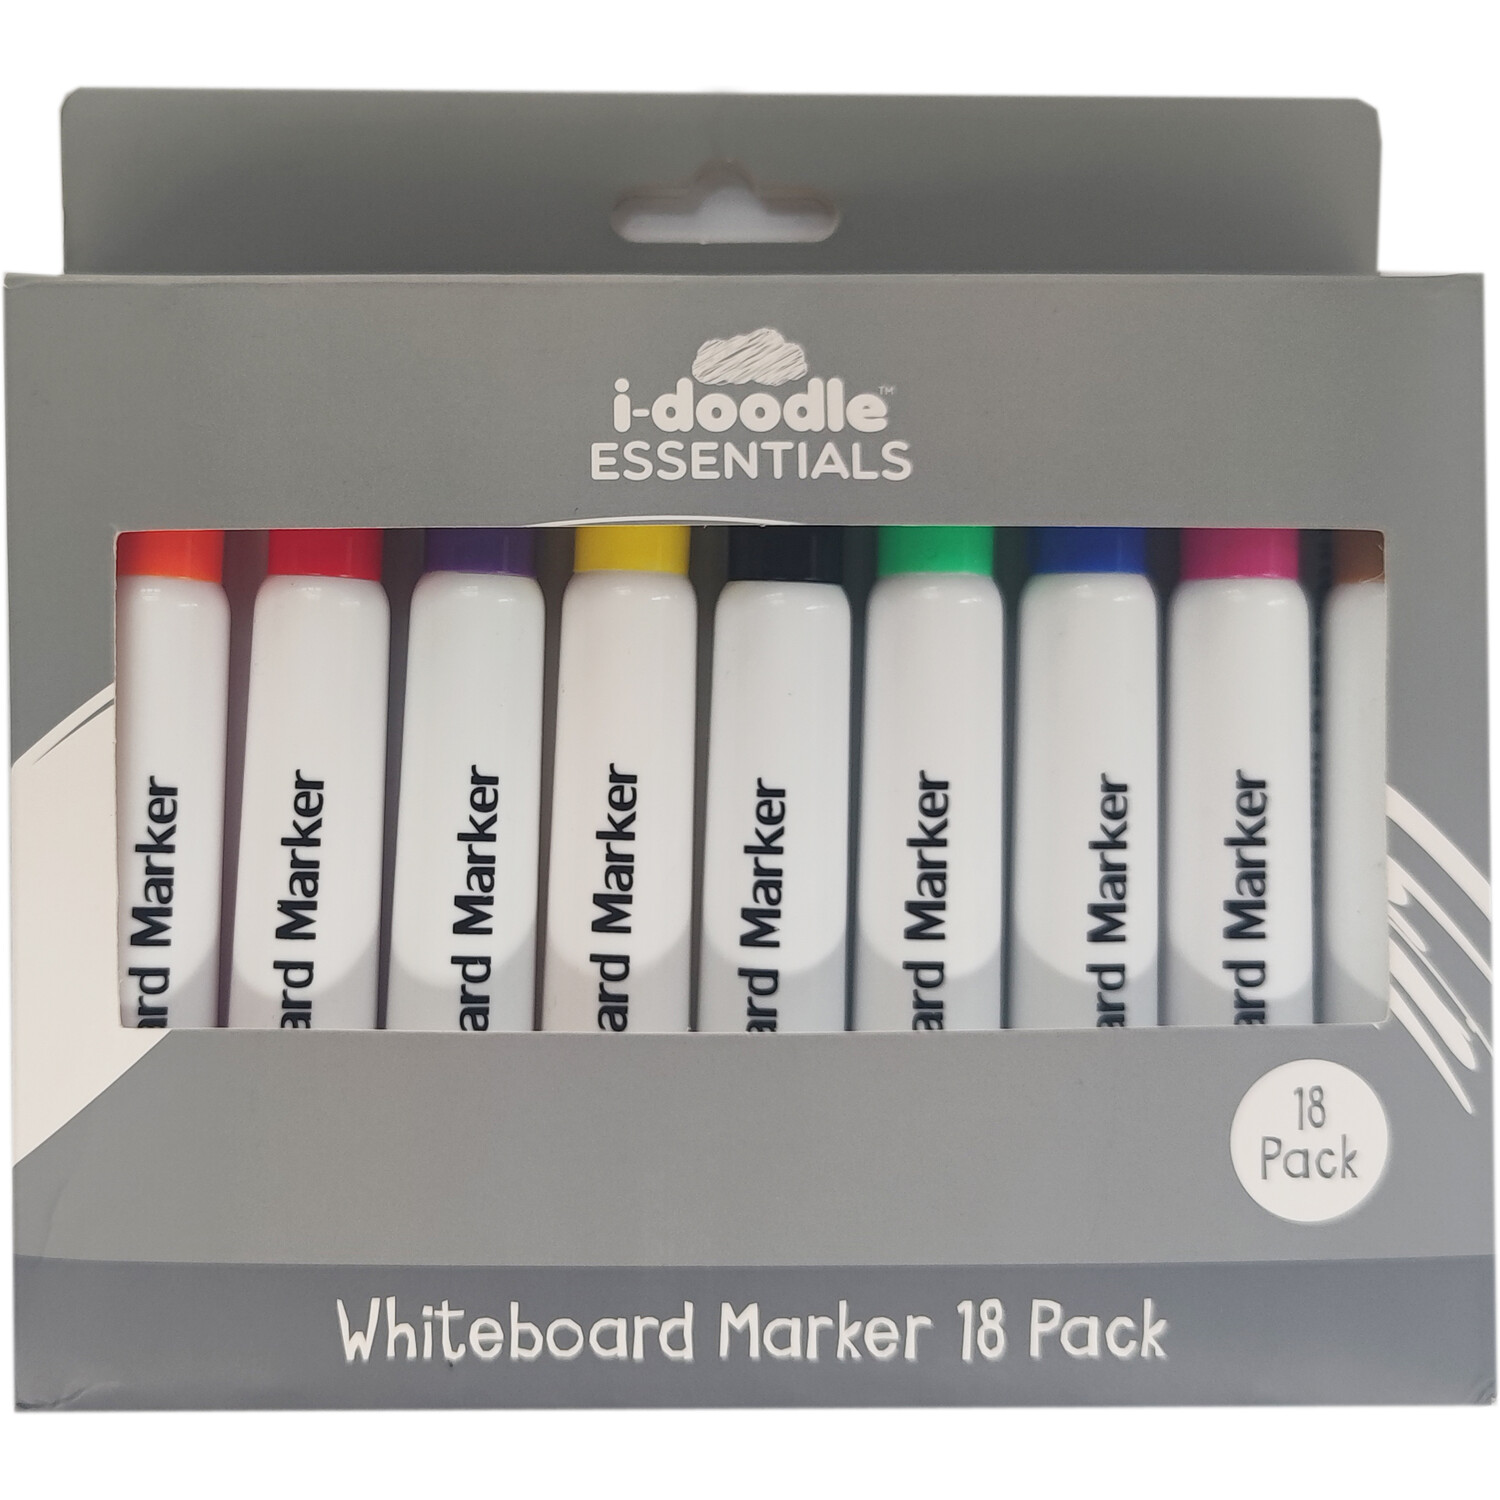 i-doodle Essentials Whiteboard Marker Pens 18 Pack Image 1